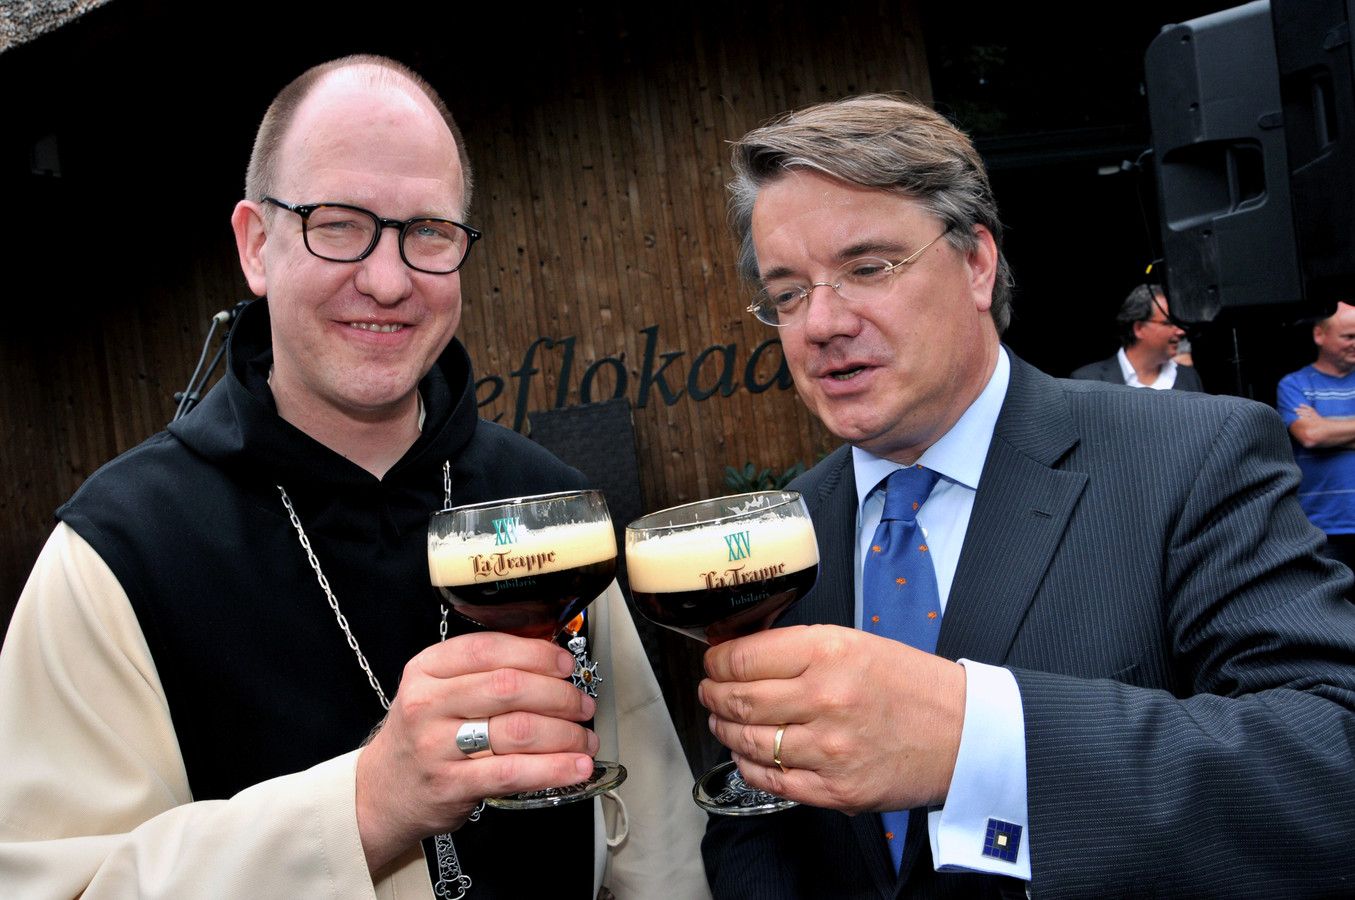 Commissaris van de Koning Wim van de Donk, op de foto met een bekend Brabants biertje: de Tilburgse La Trappe.